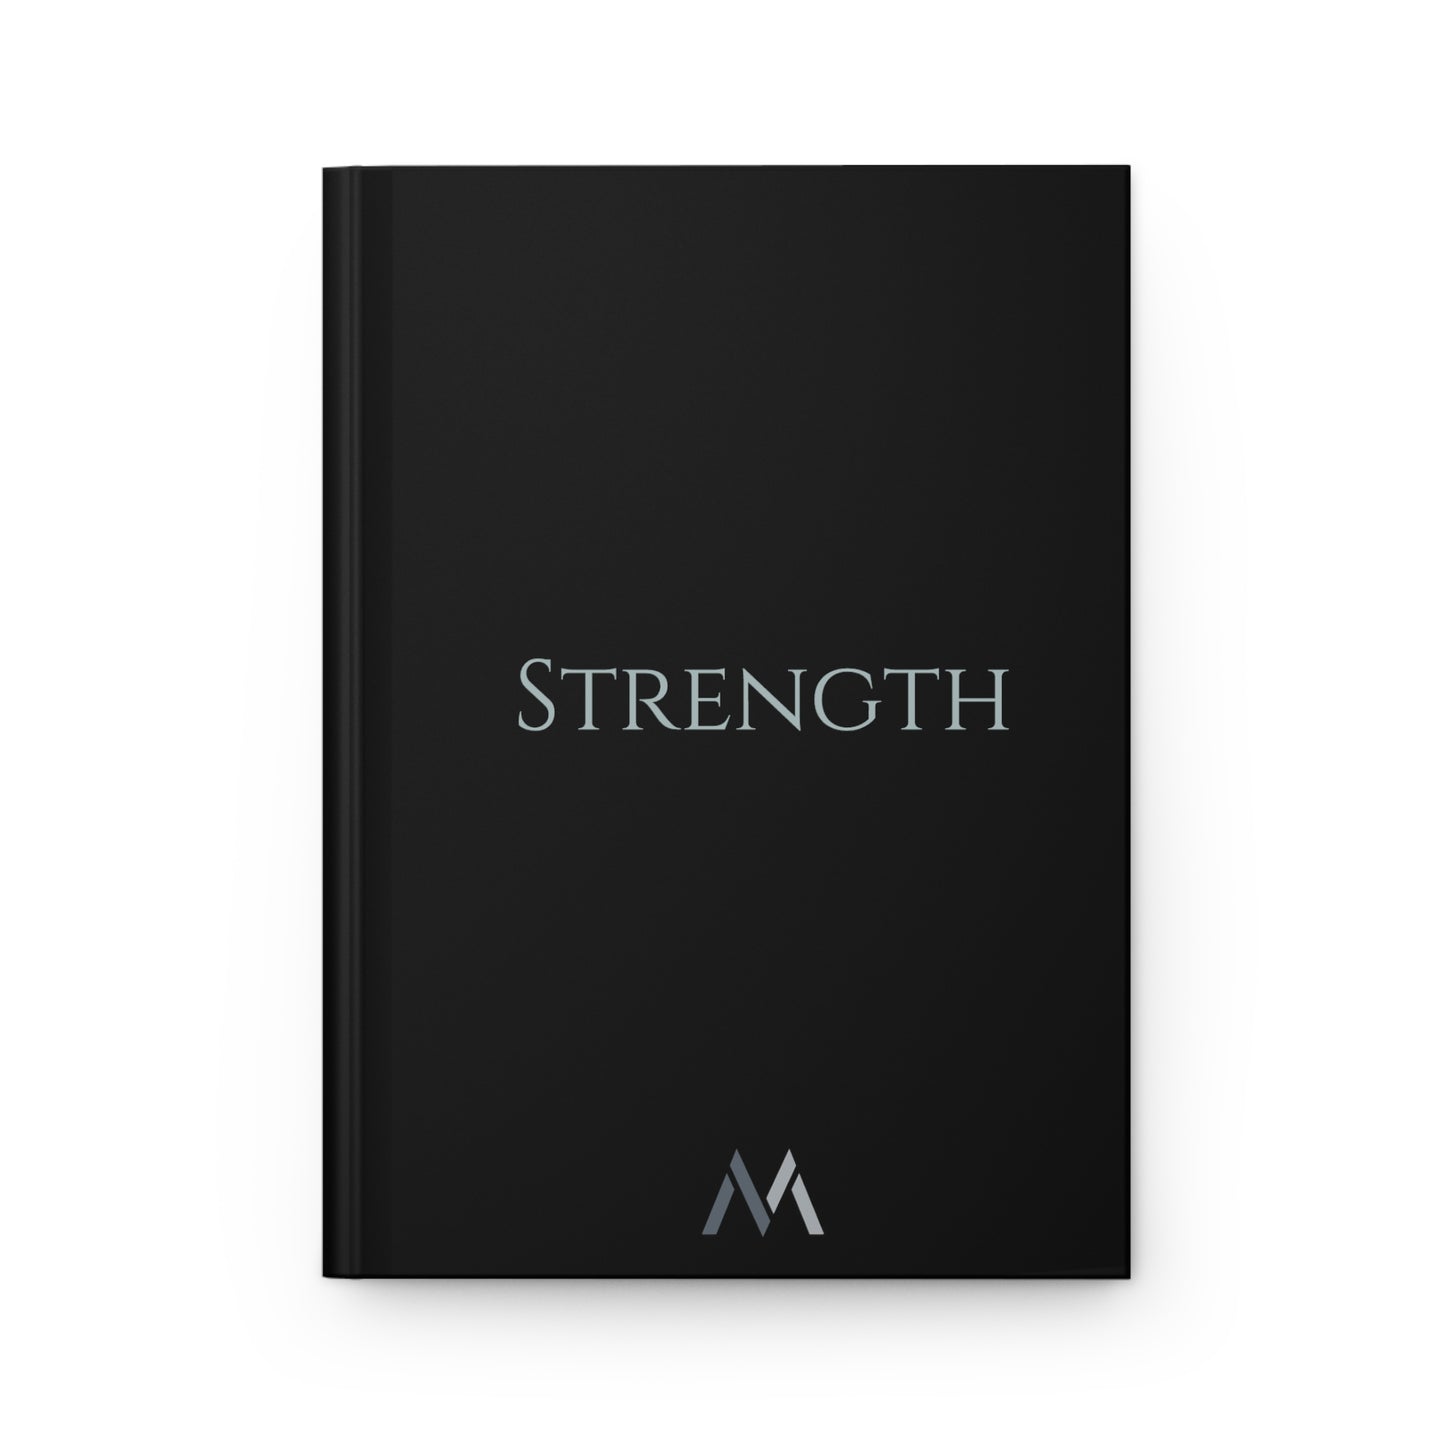 "STRENGTH" Hard Cover Matte Black Journal